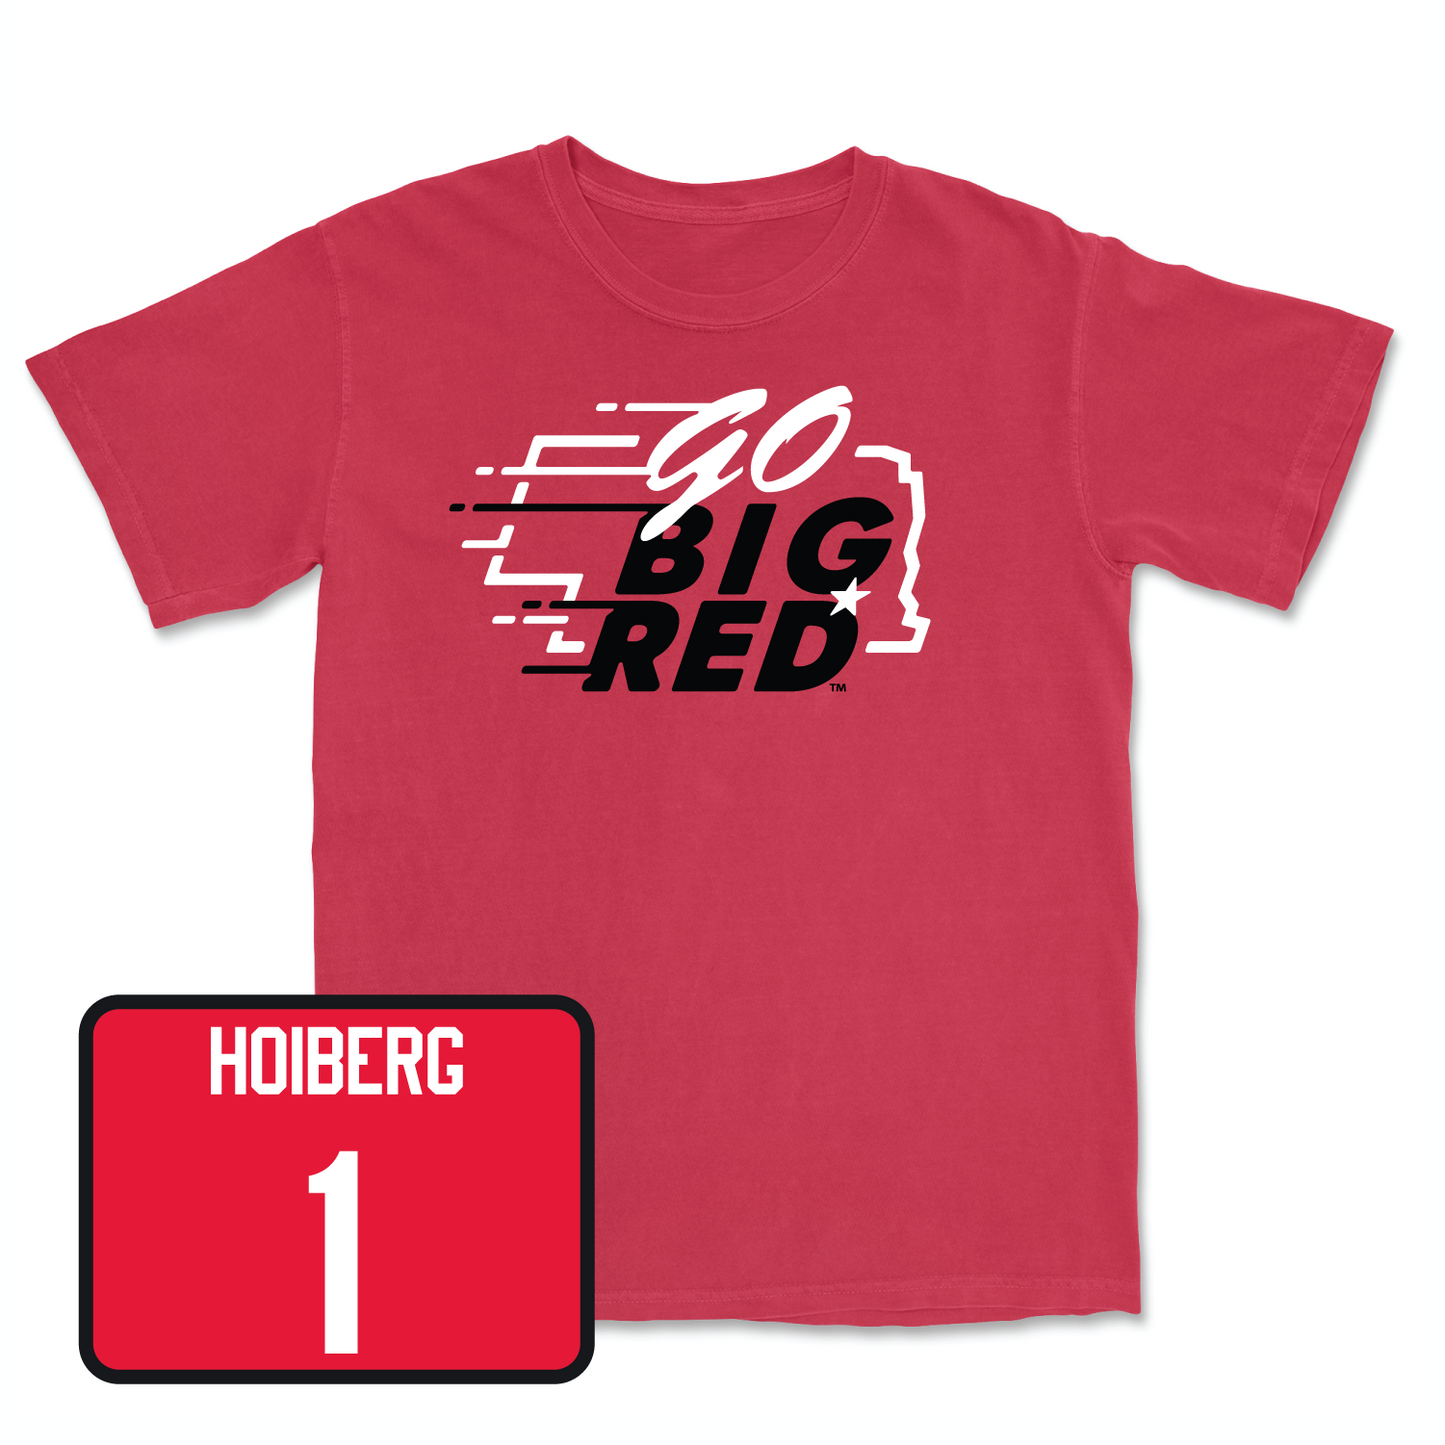 Red Men's Basketball GBR Tee 3X-Large / Samuel Hoiberg | #1